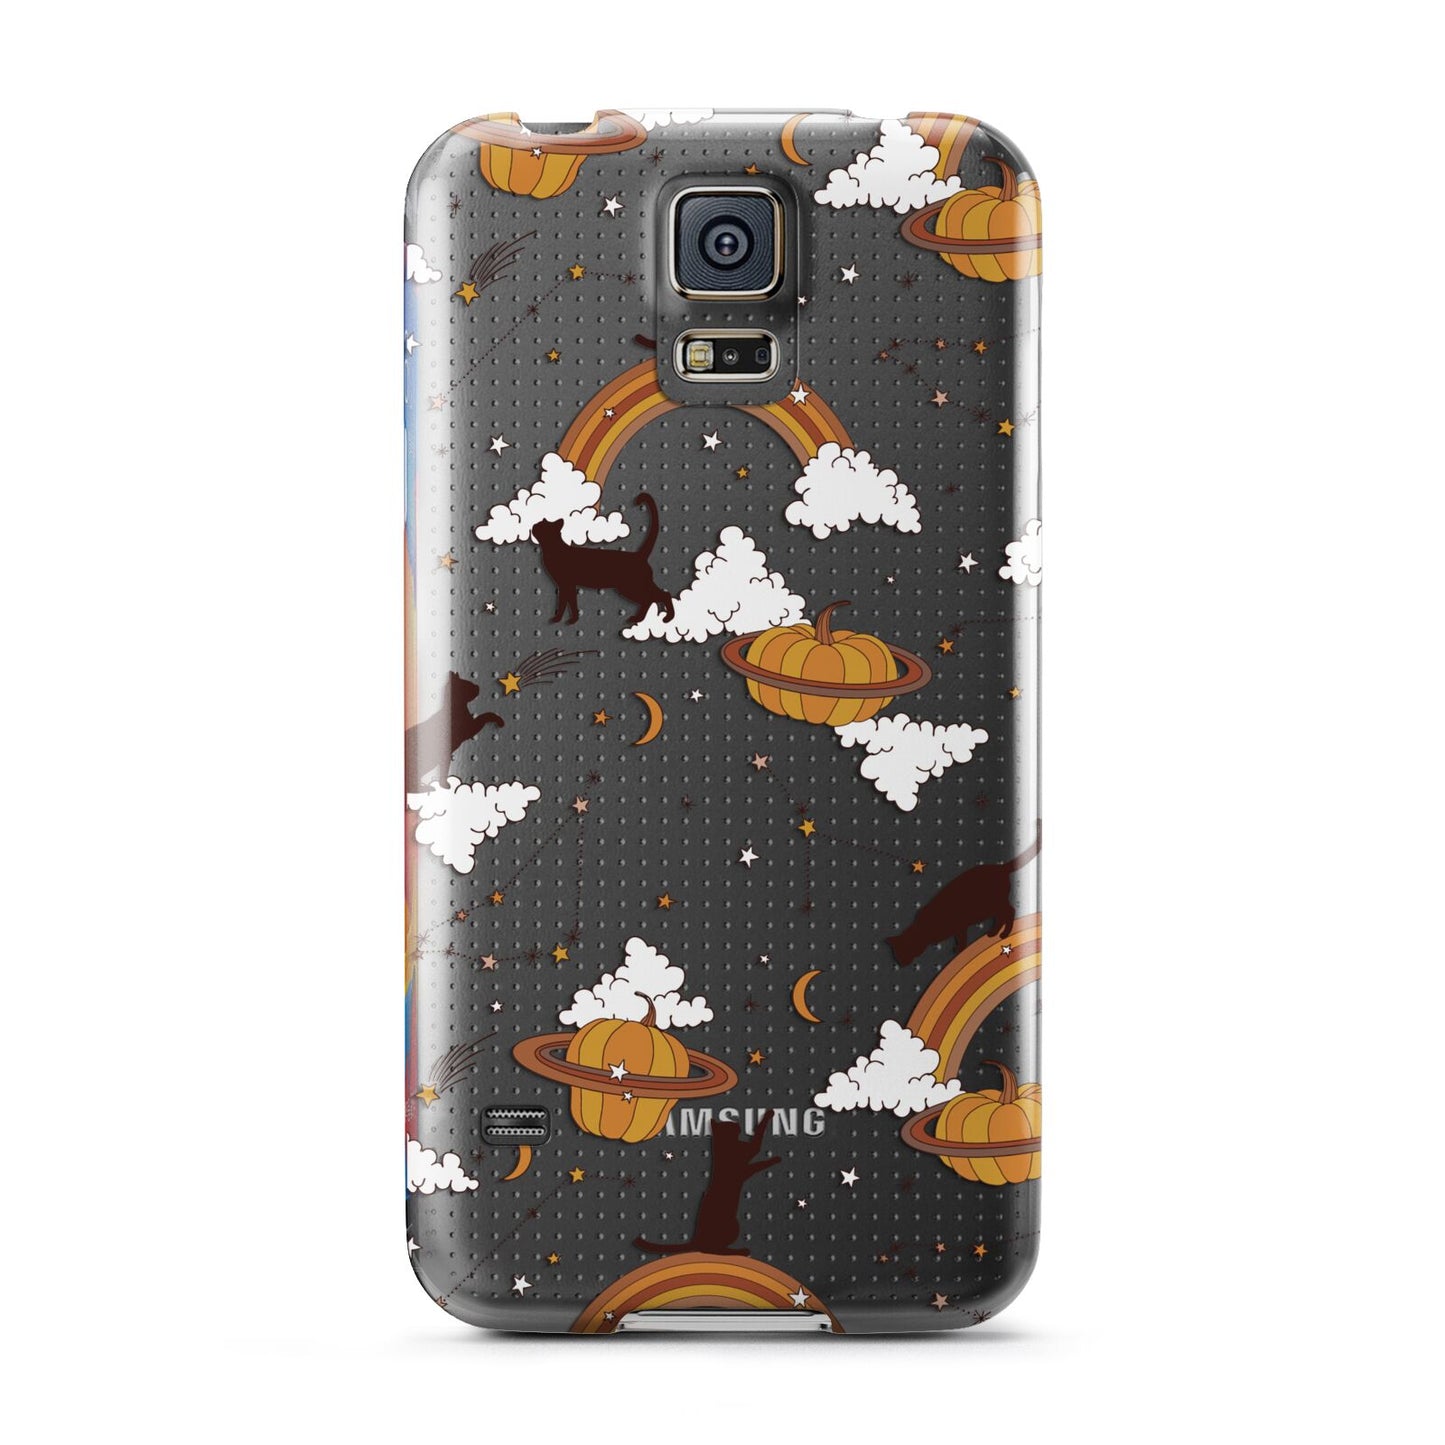 Cat Constellation Samsung Galaxy S5 Case